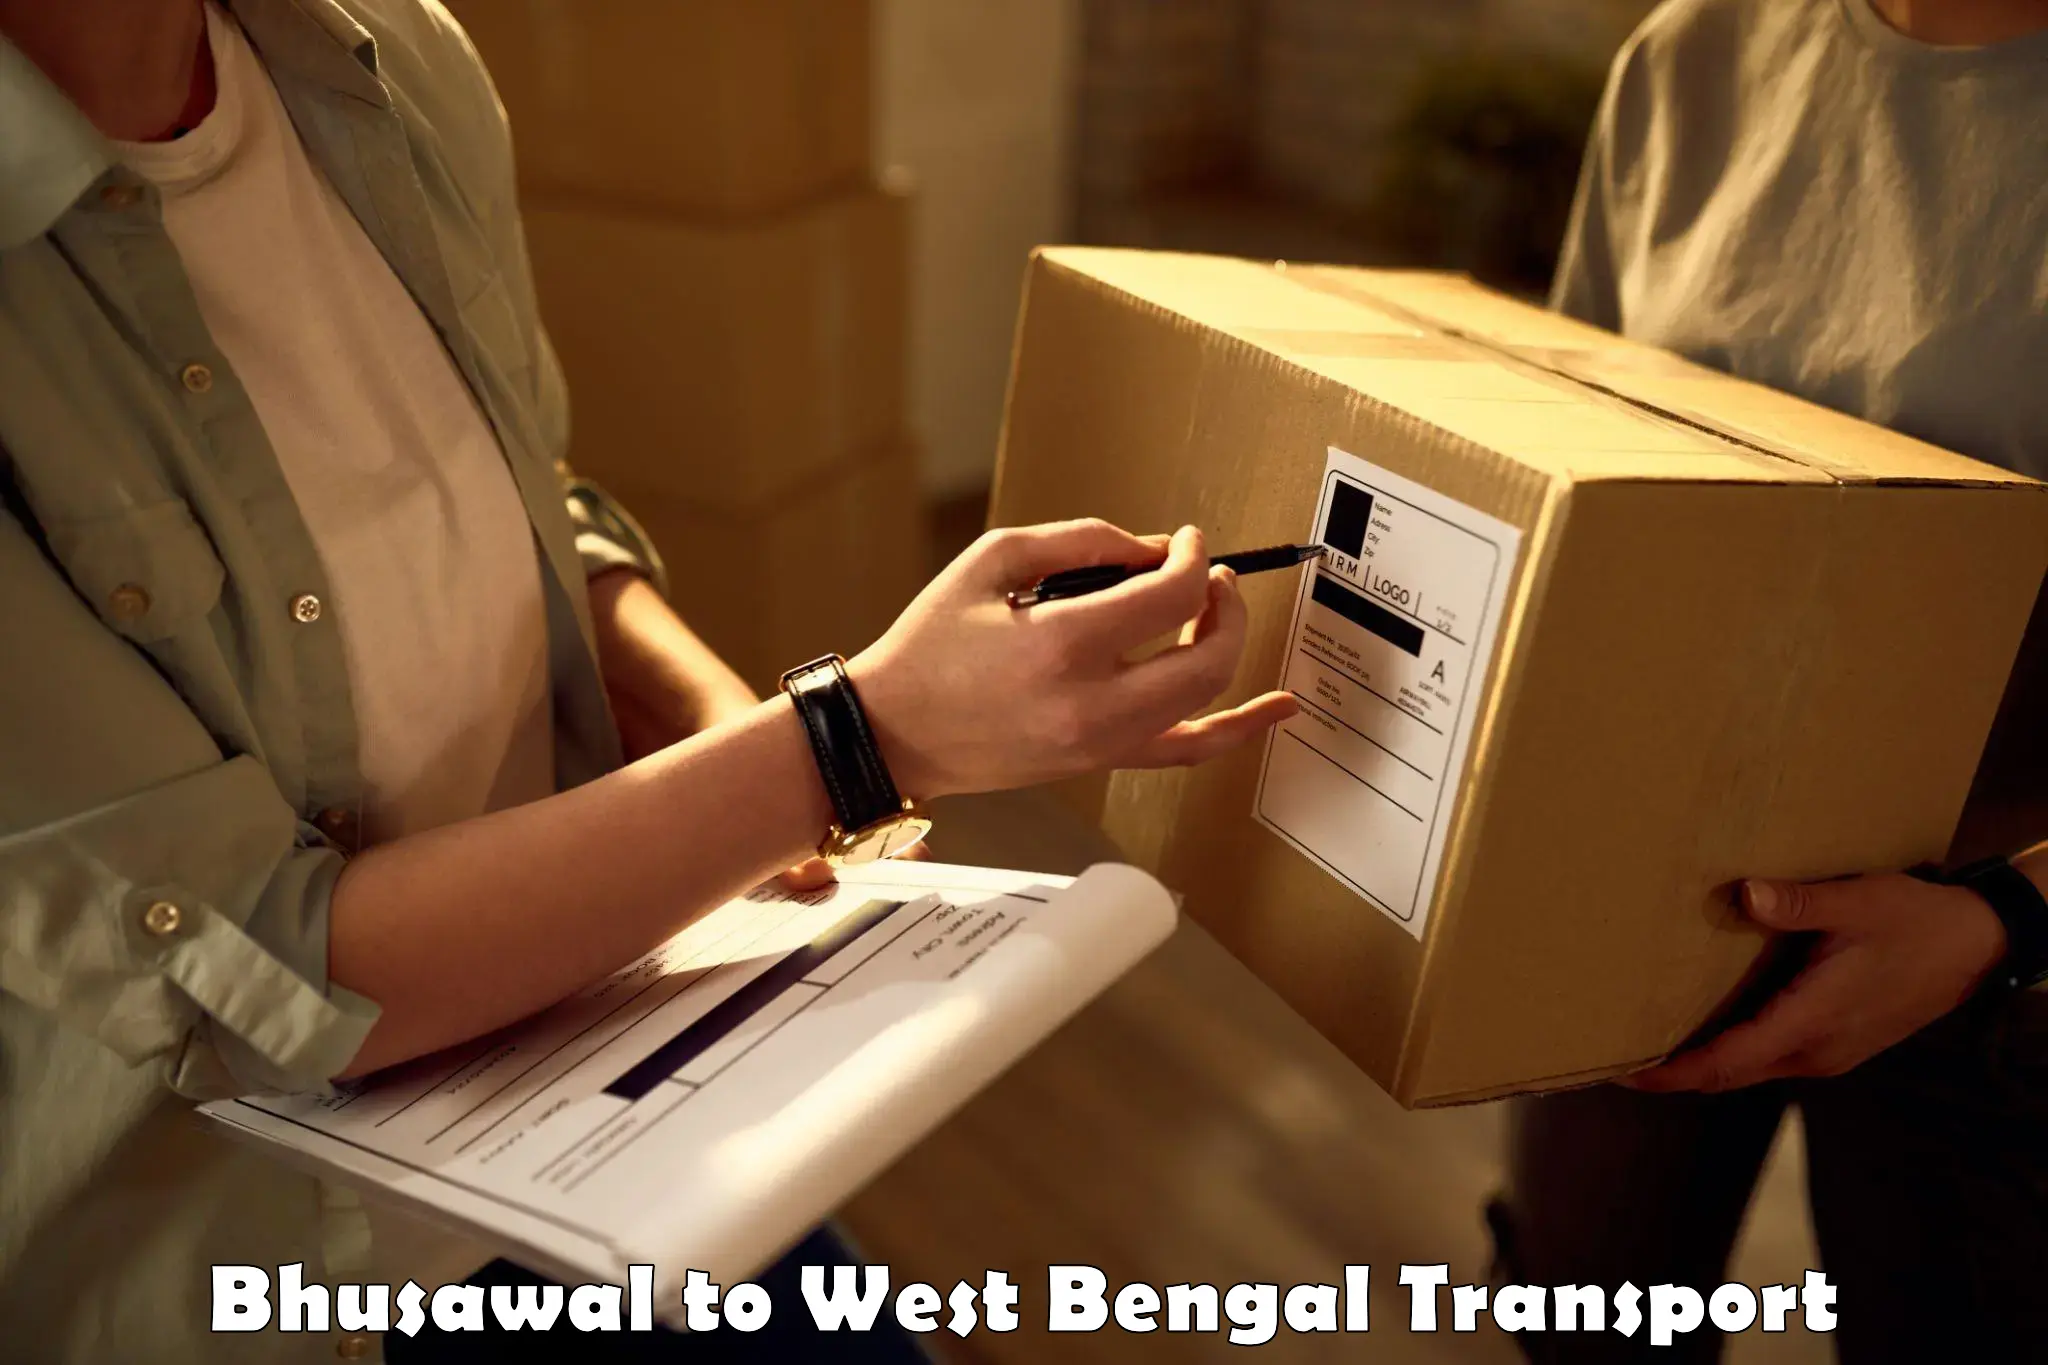 Shipping partner Bhusawal to Mungpoo